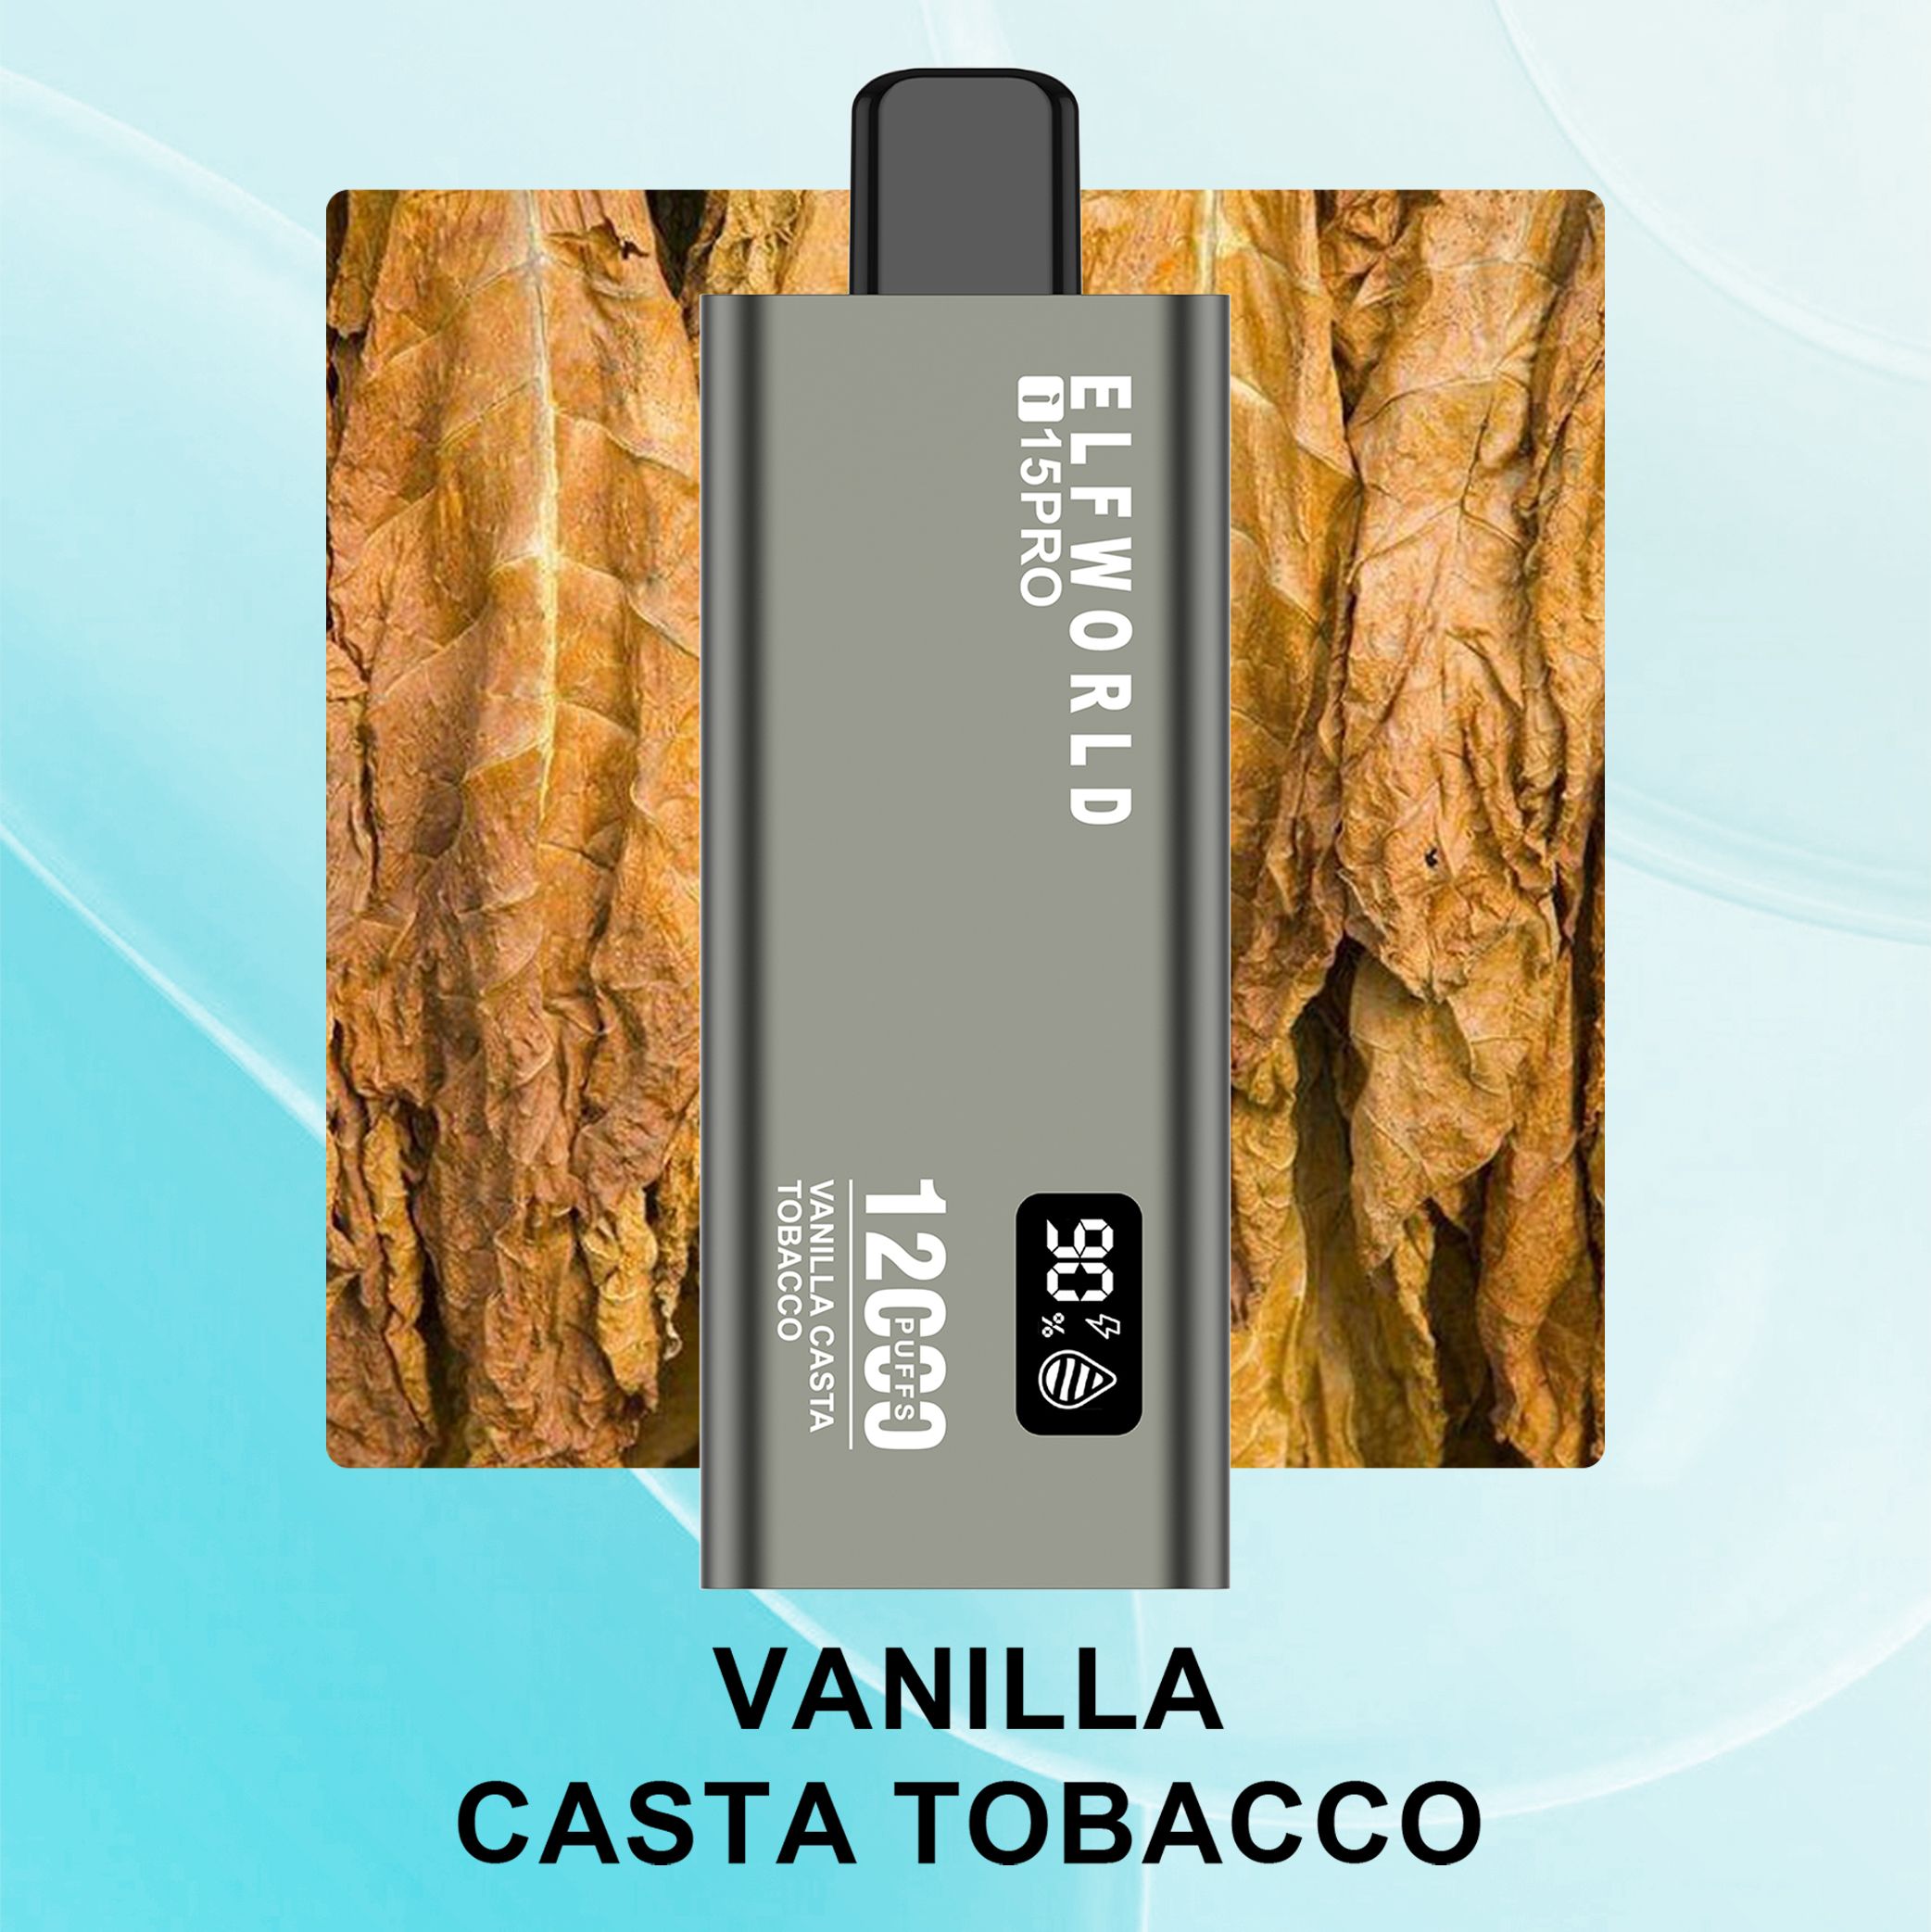 4.Tabaco Vainilla Casta